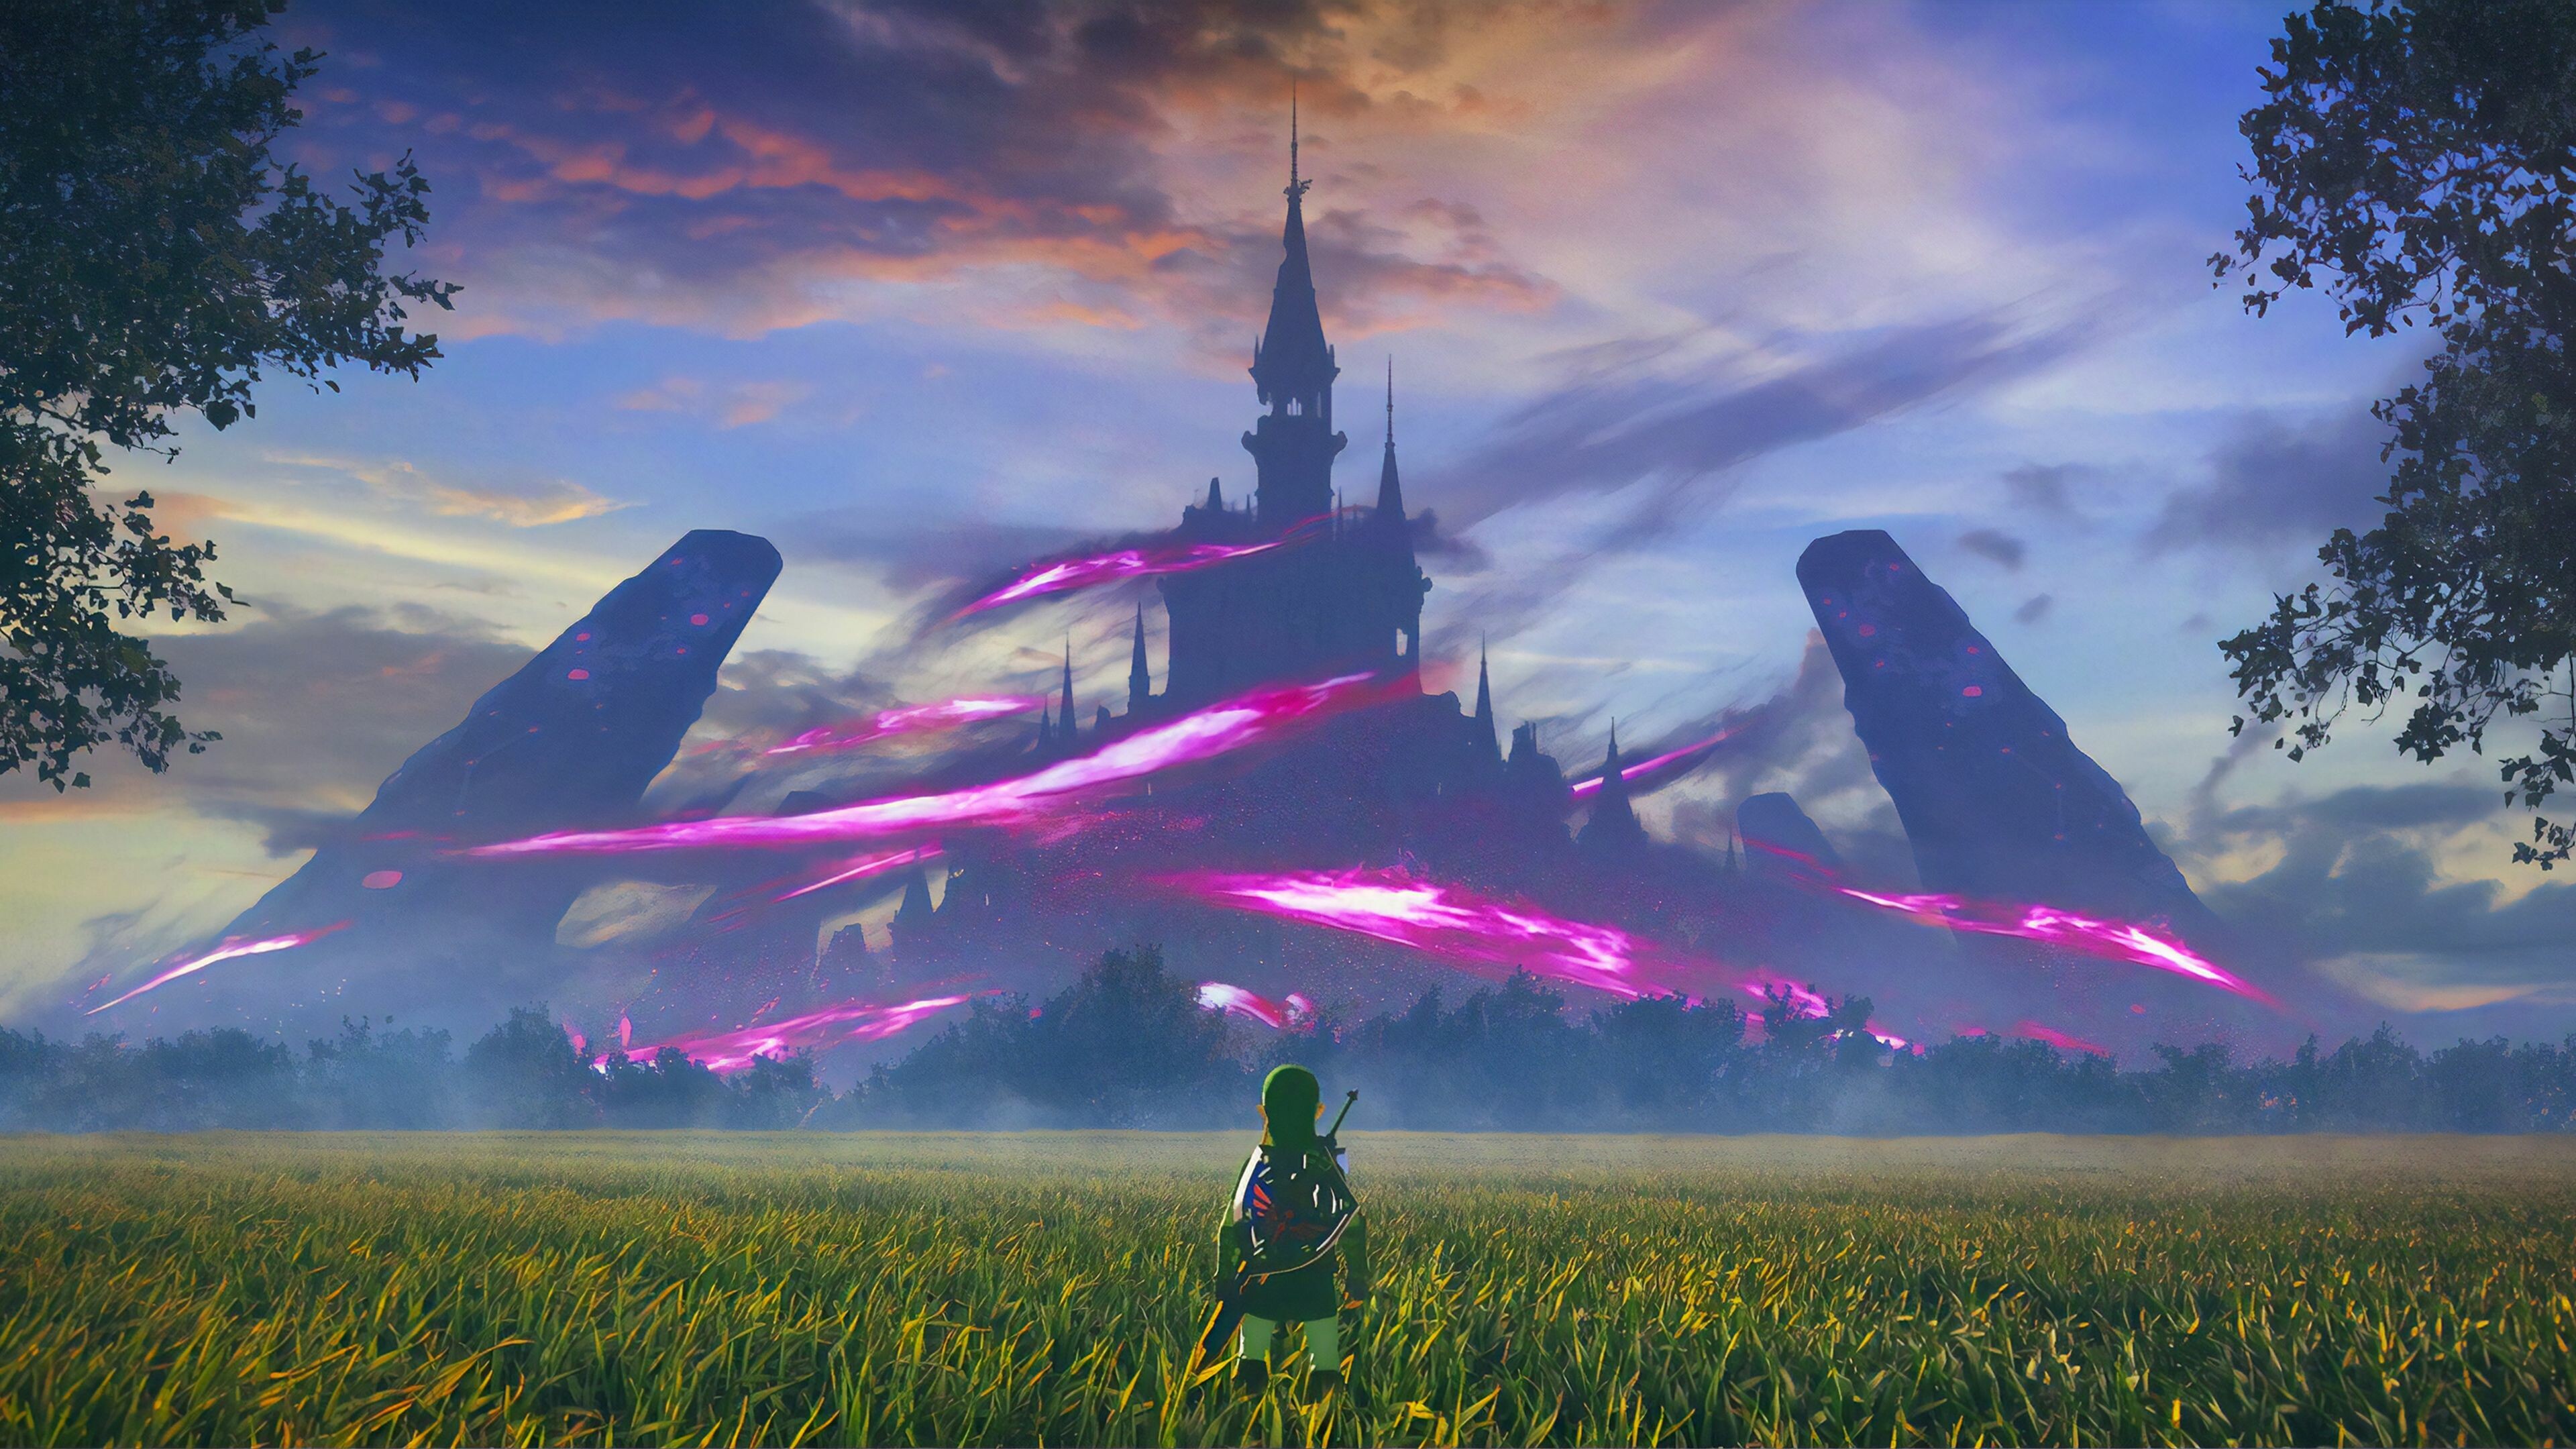 The Legend of Zelda: Fantasy art landscapes, Breath of the wild, Link. 3840x2160 4K Background.